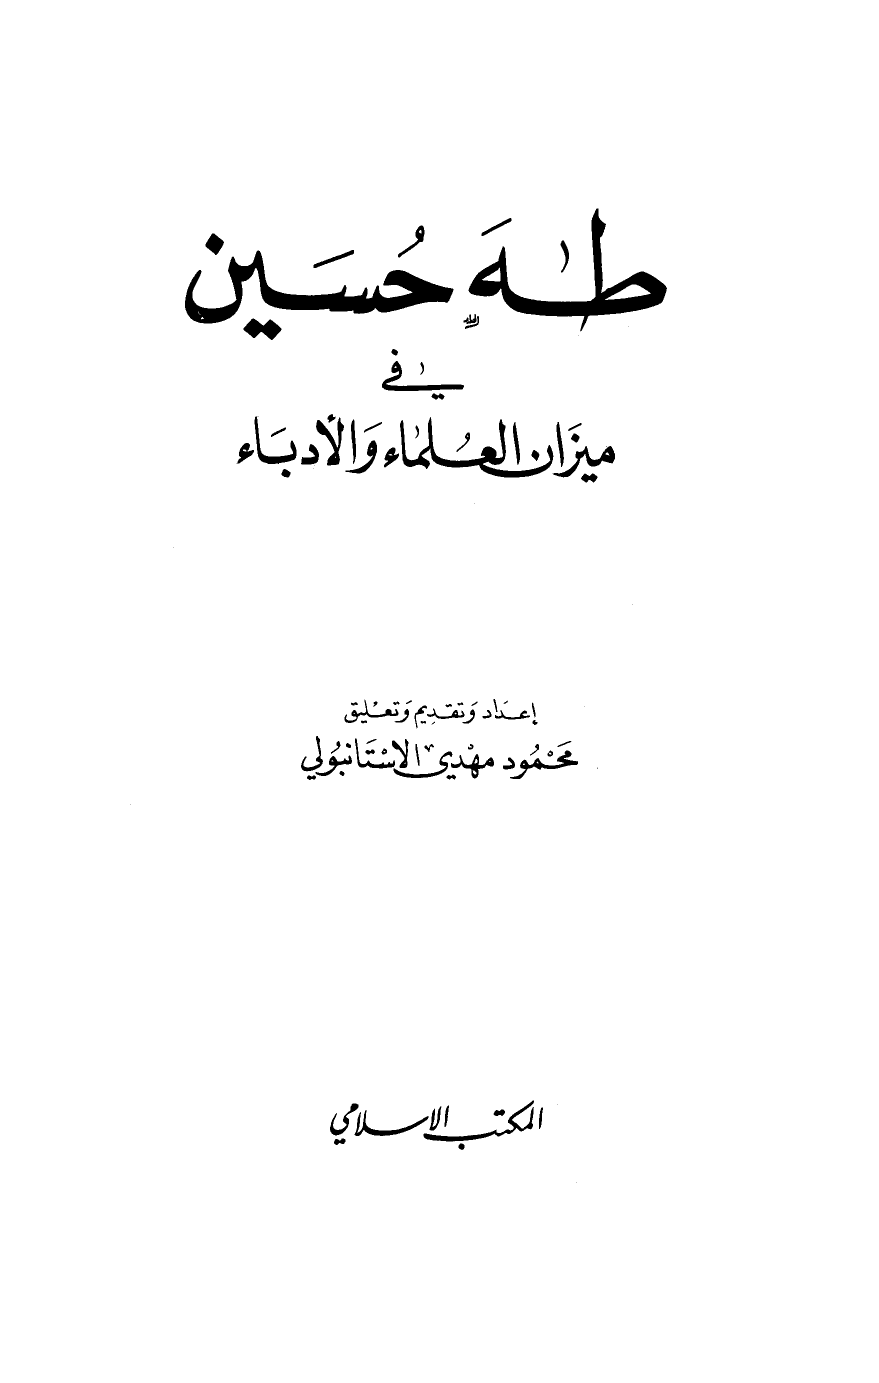 تنزيل وتحميل كتاِب طه حسين في ميزان العلماء والأدباء pdf برابط مباشر مجاناً 